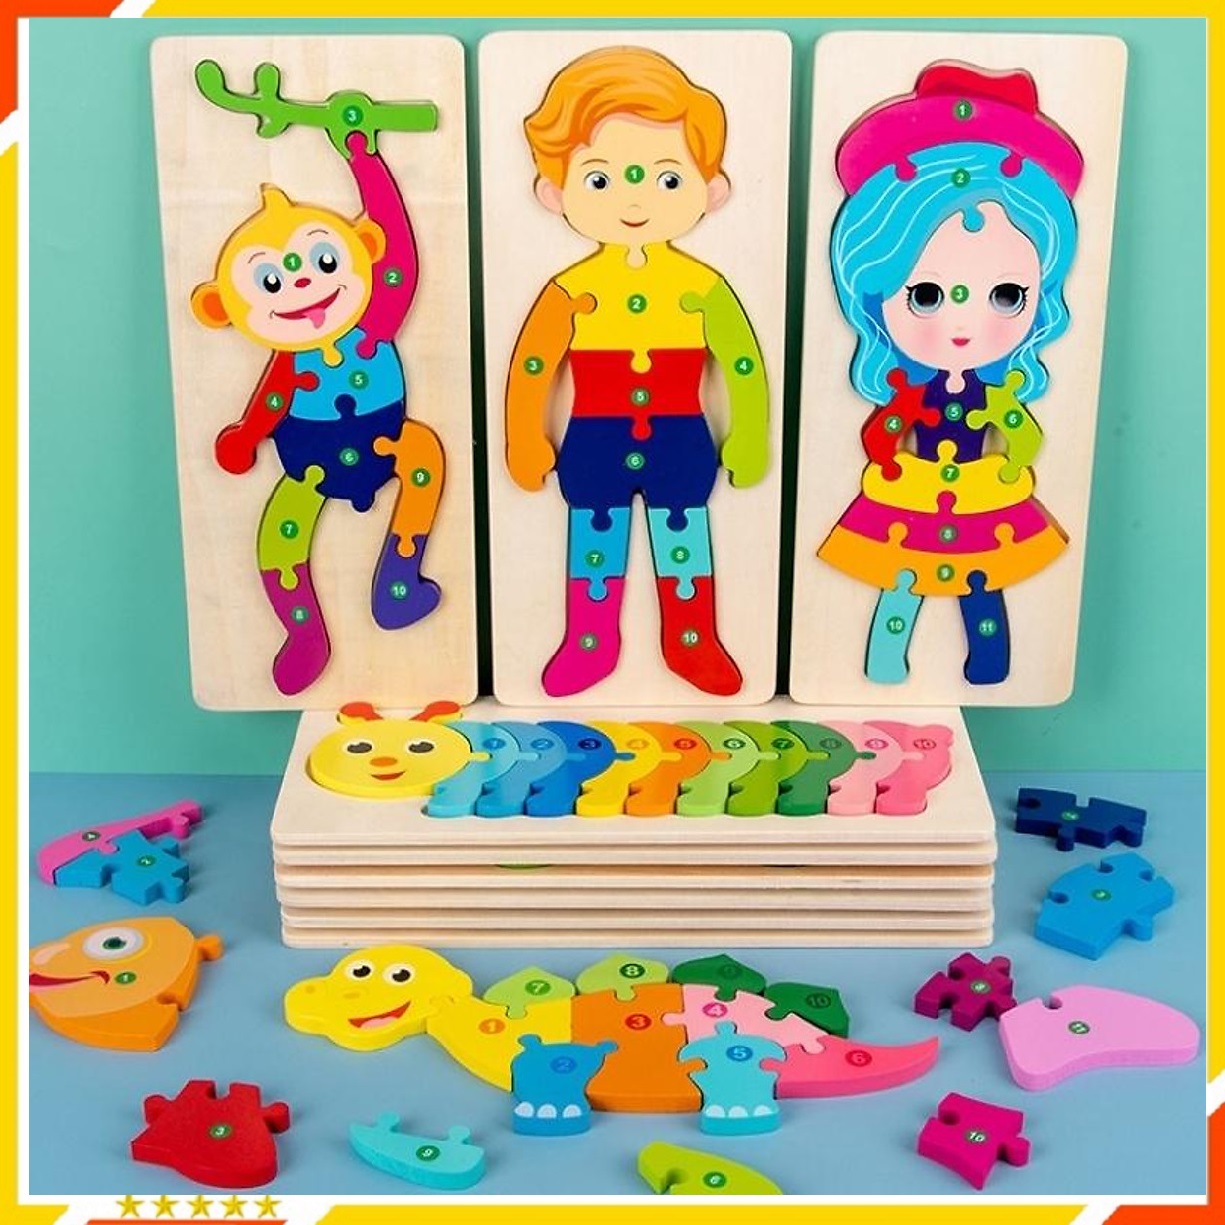 Đồ Chơi Trẻ Em - Combo 5 Tranh Ghép Gỗ Cho Bé Tranh Ghép Gỗ 3D - Tranh Nối Số Từ 1 - 10 đa dạng màu sắc giúp bé phát triển trí tuệ